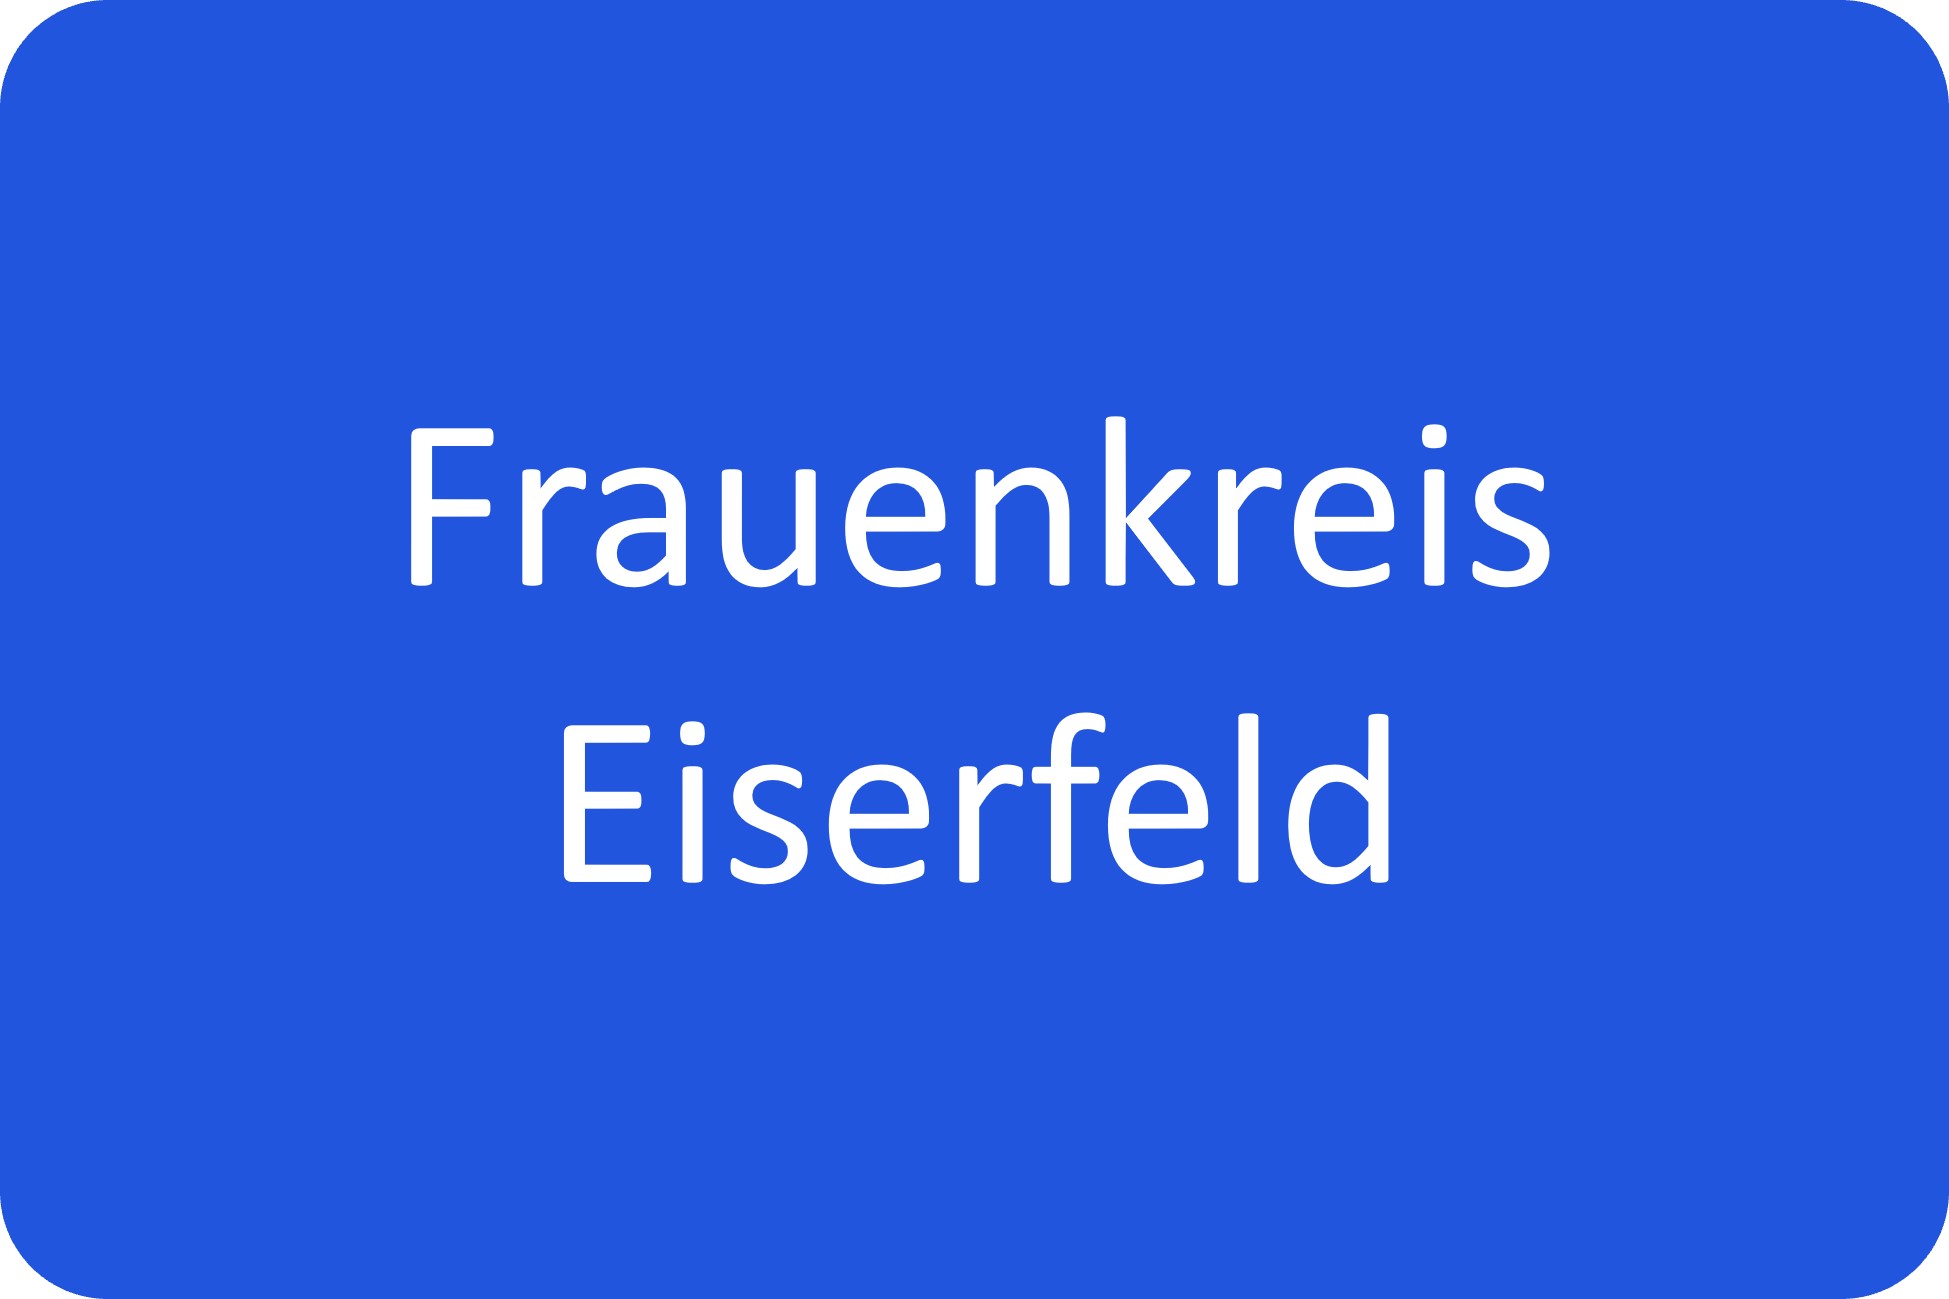 Frauenkreis Eiserfeld